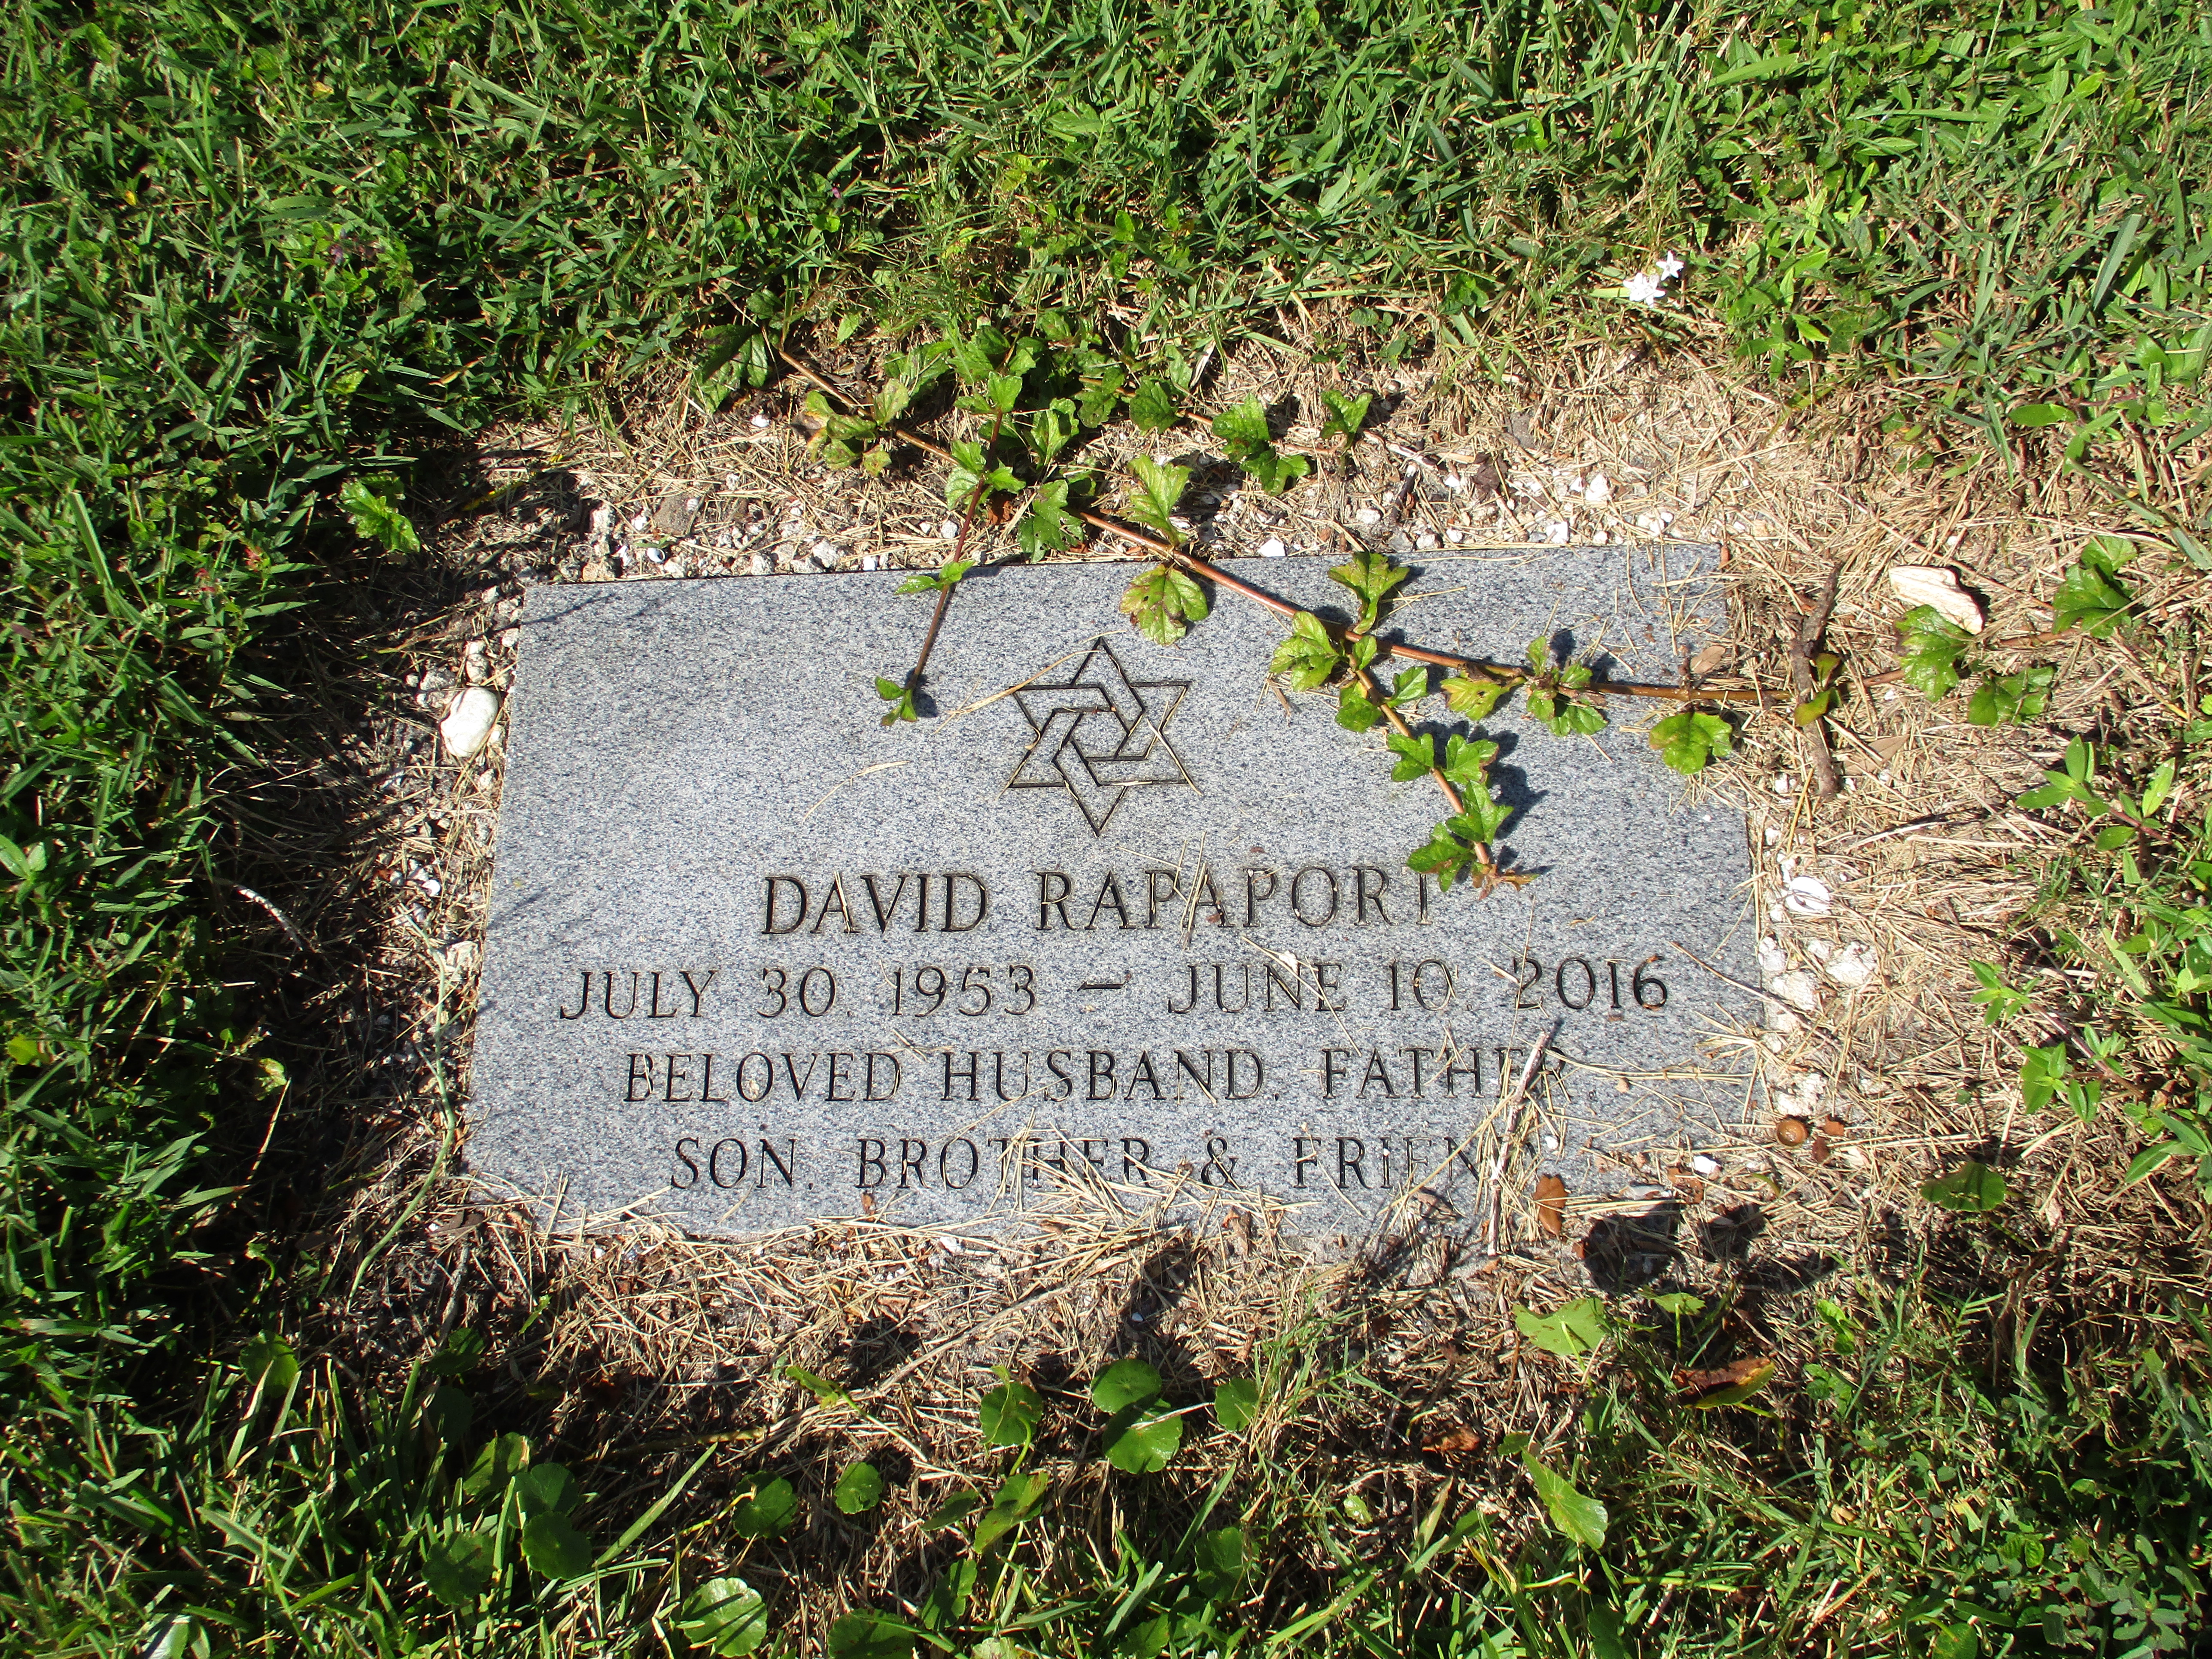 David Rapaport